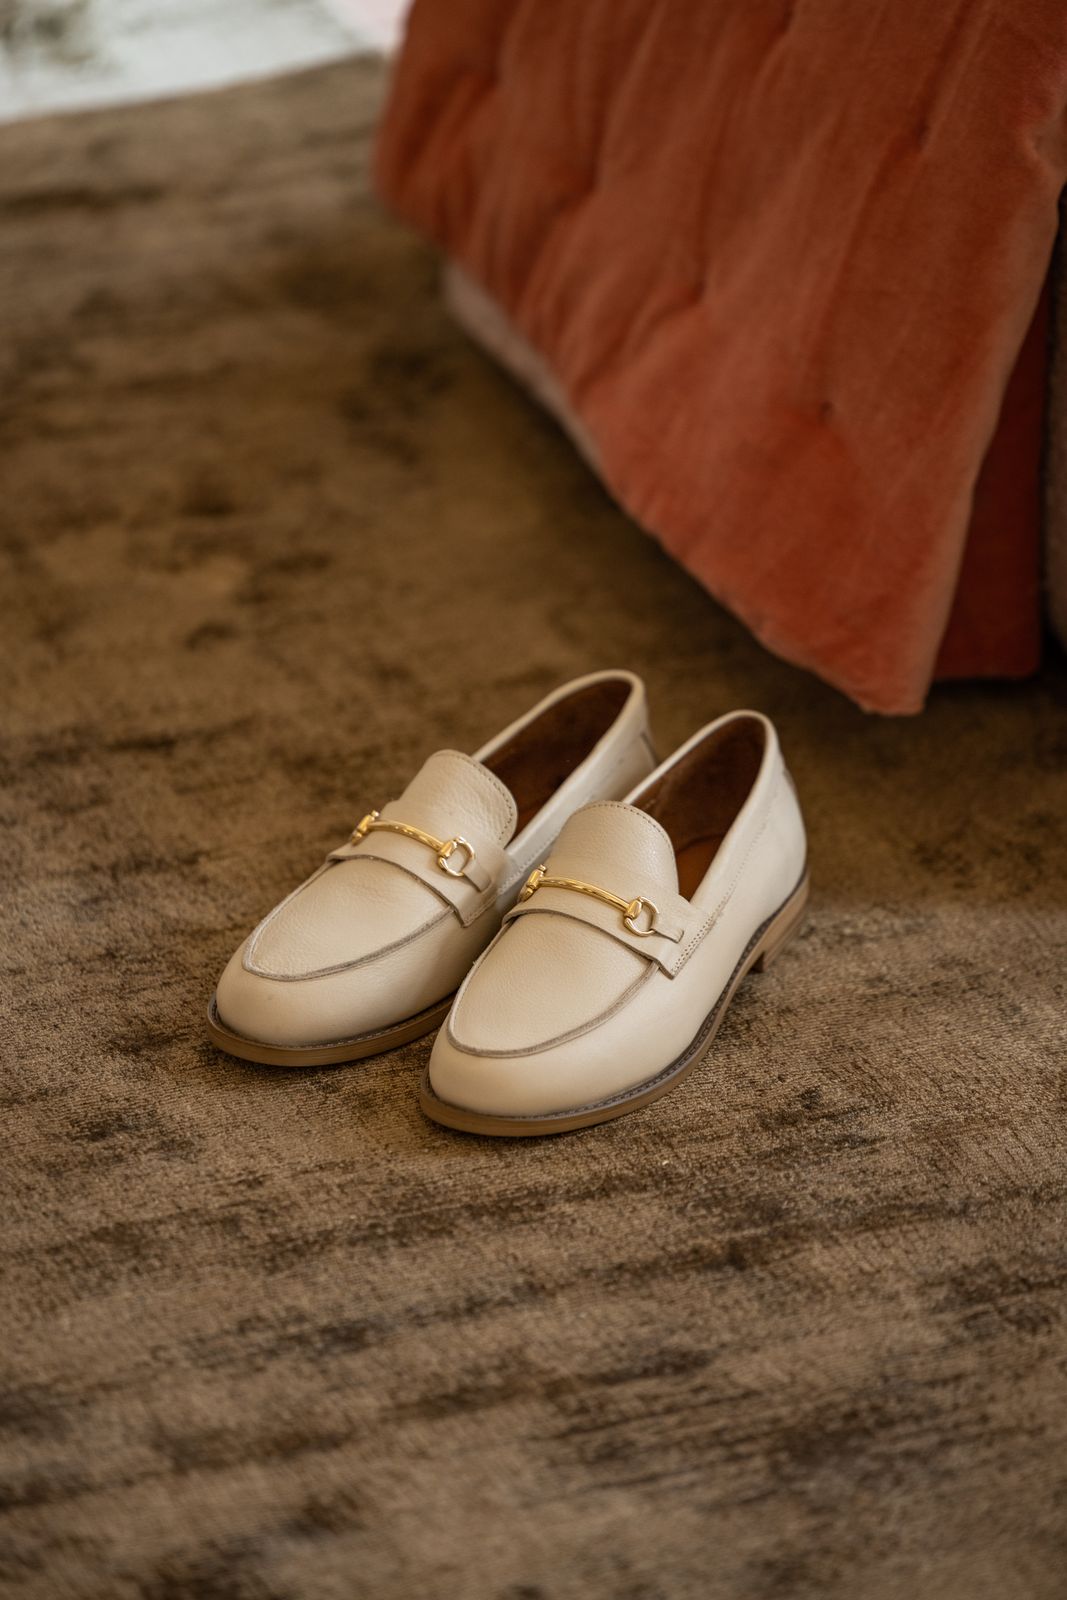 Volwassenheid Jane Austen Rust uit Beige leren loafers met goudkleurige gesp